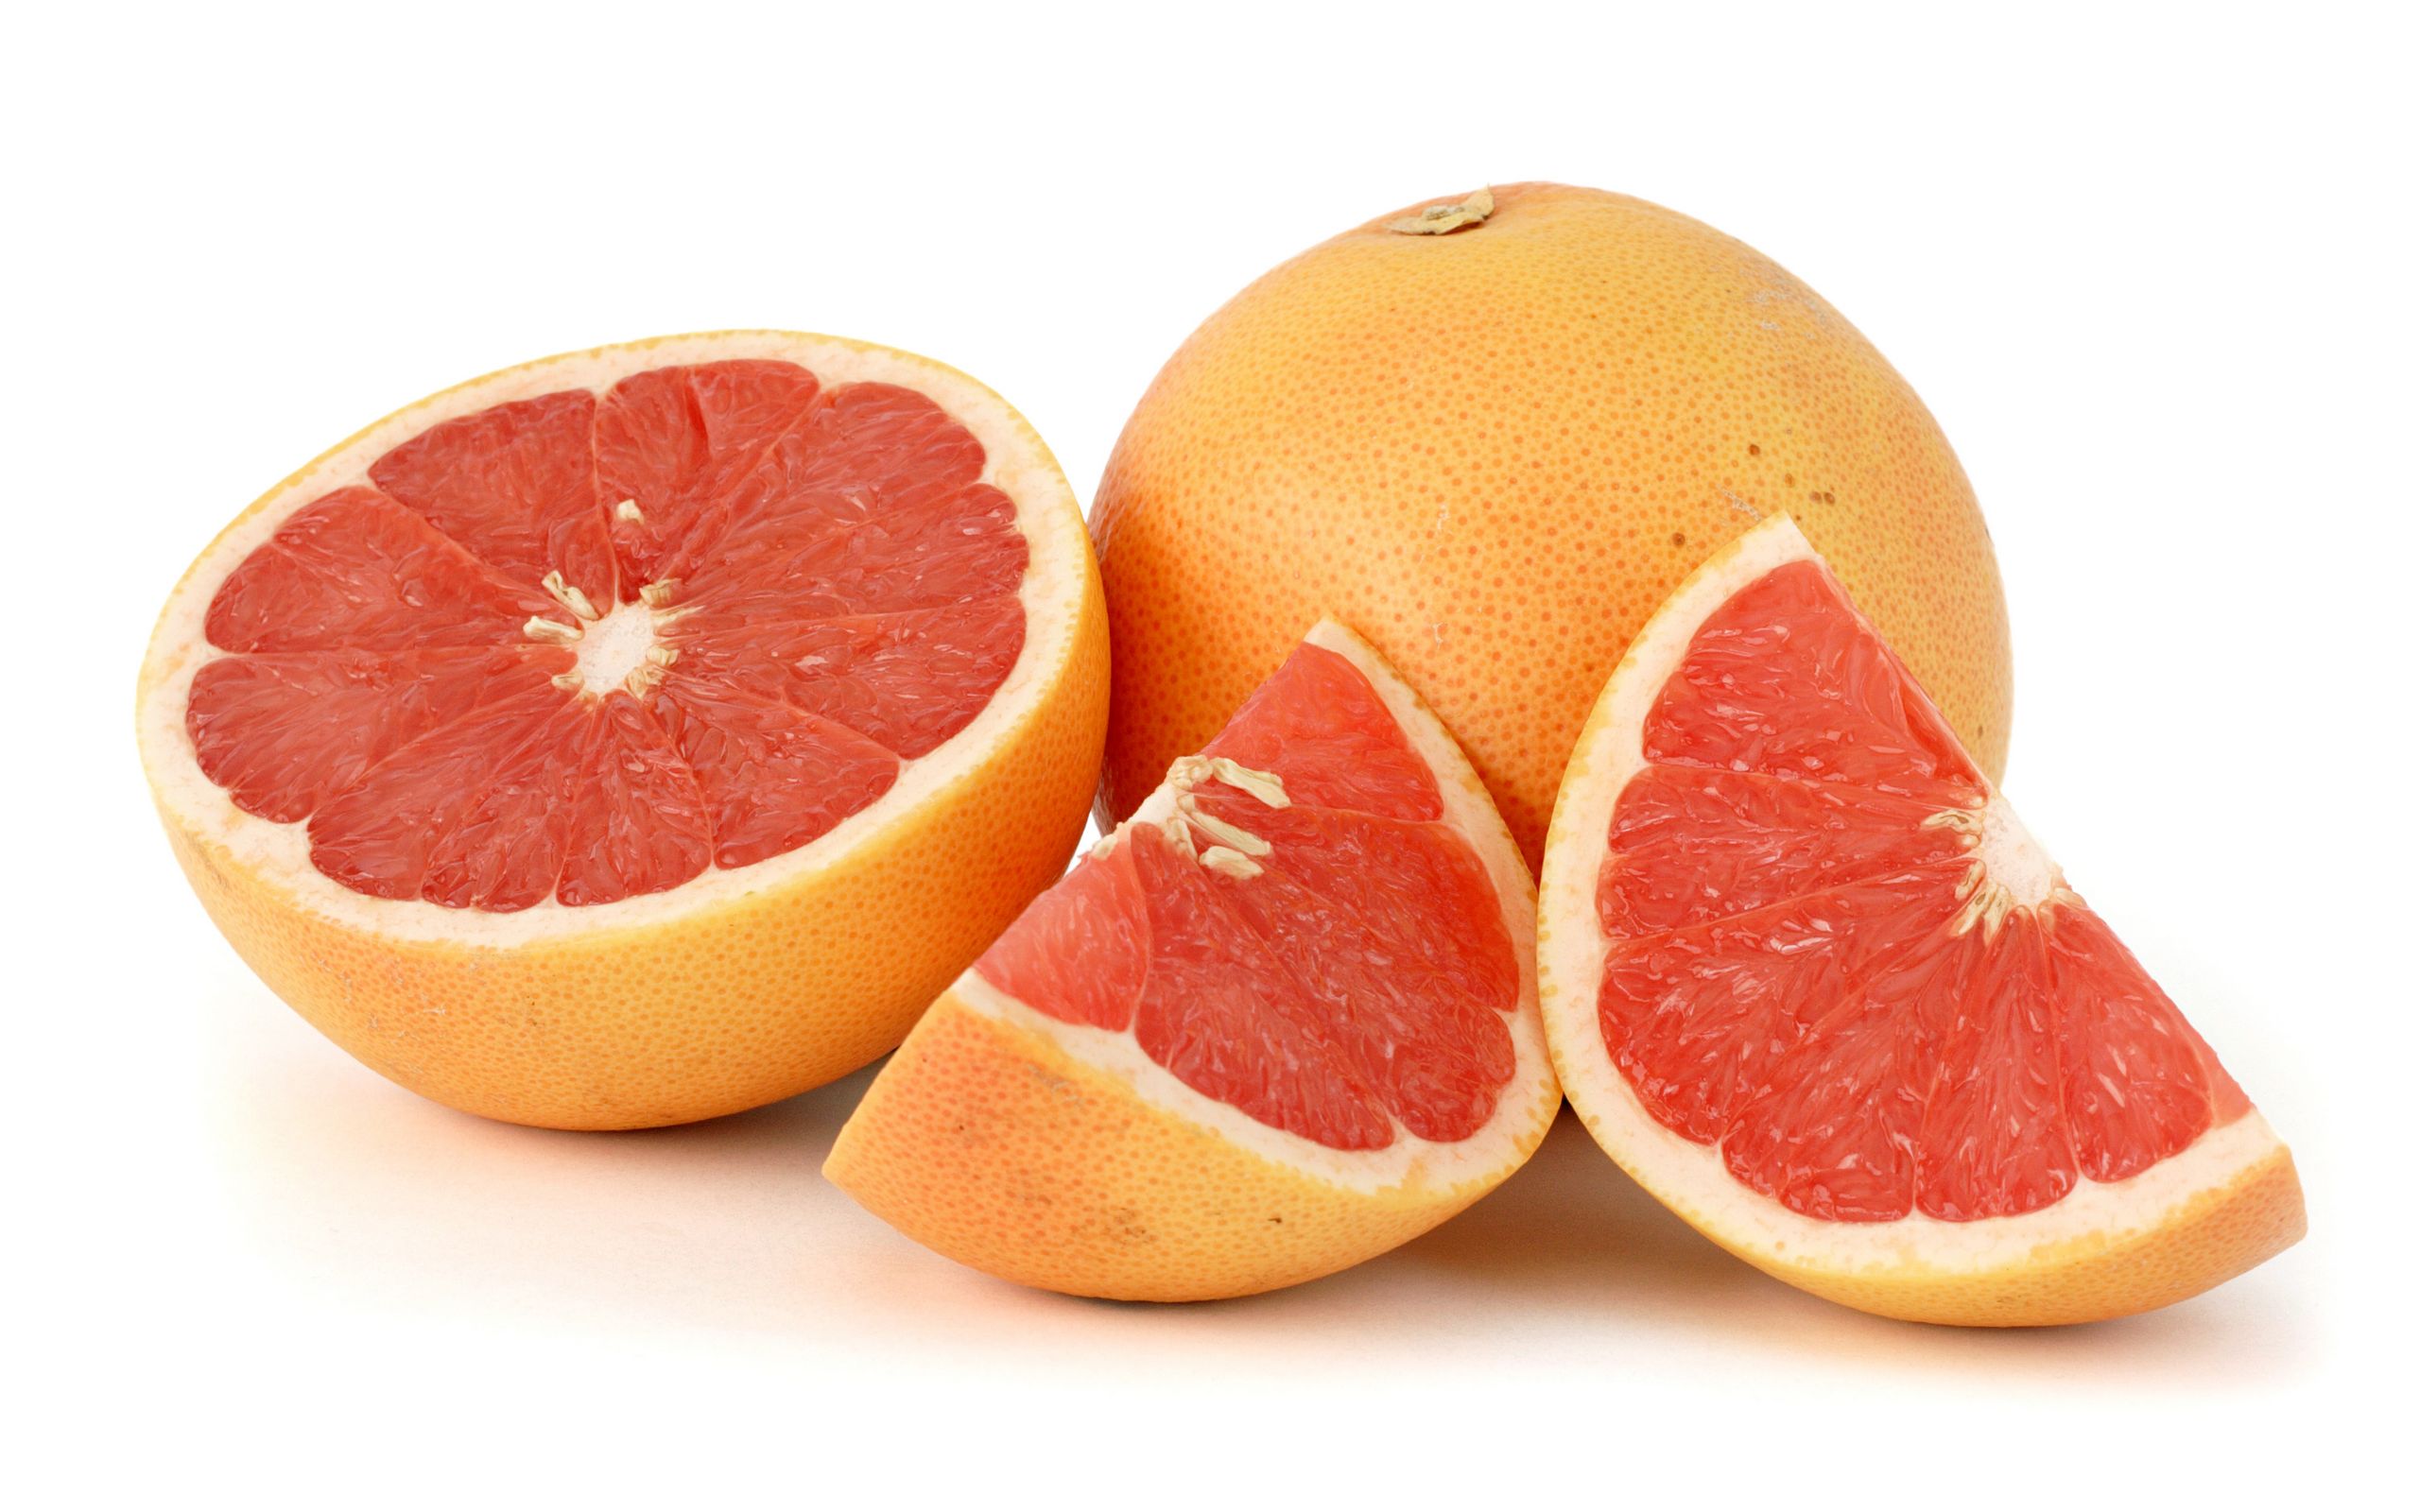 Grapefruit 2560x1600. Tapeta, wallpaper, obrázek zdarma ke stažení